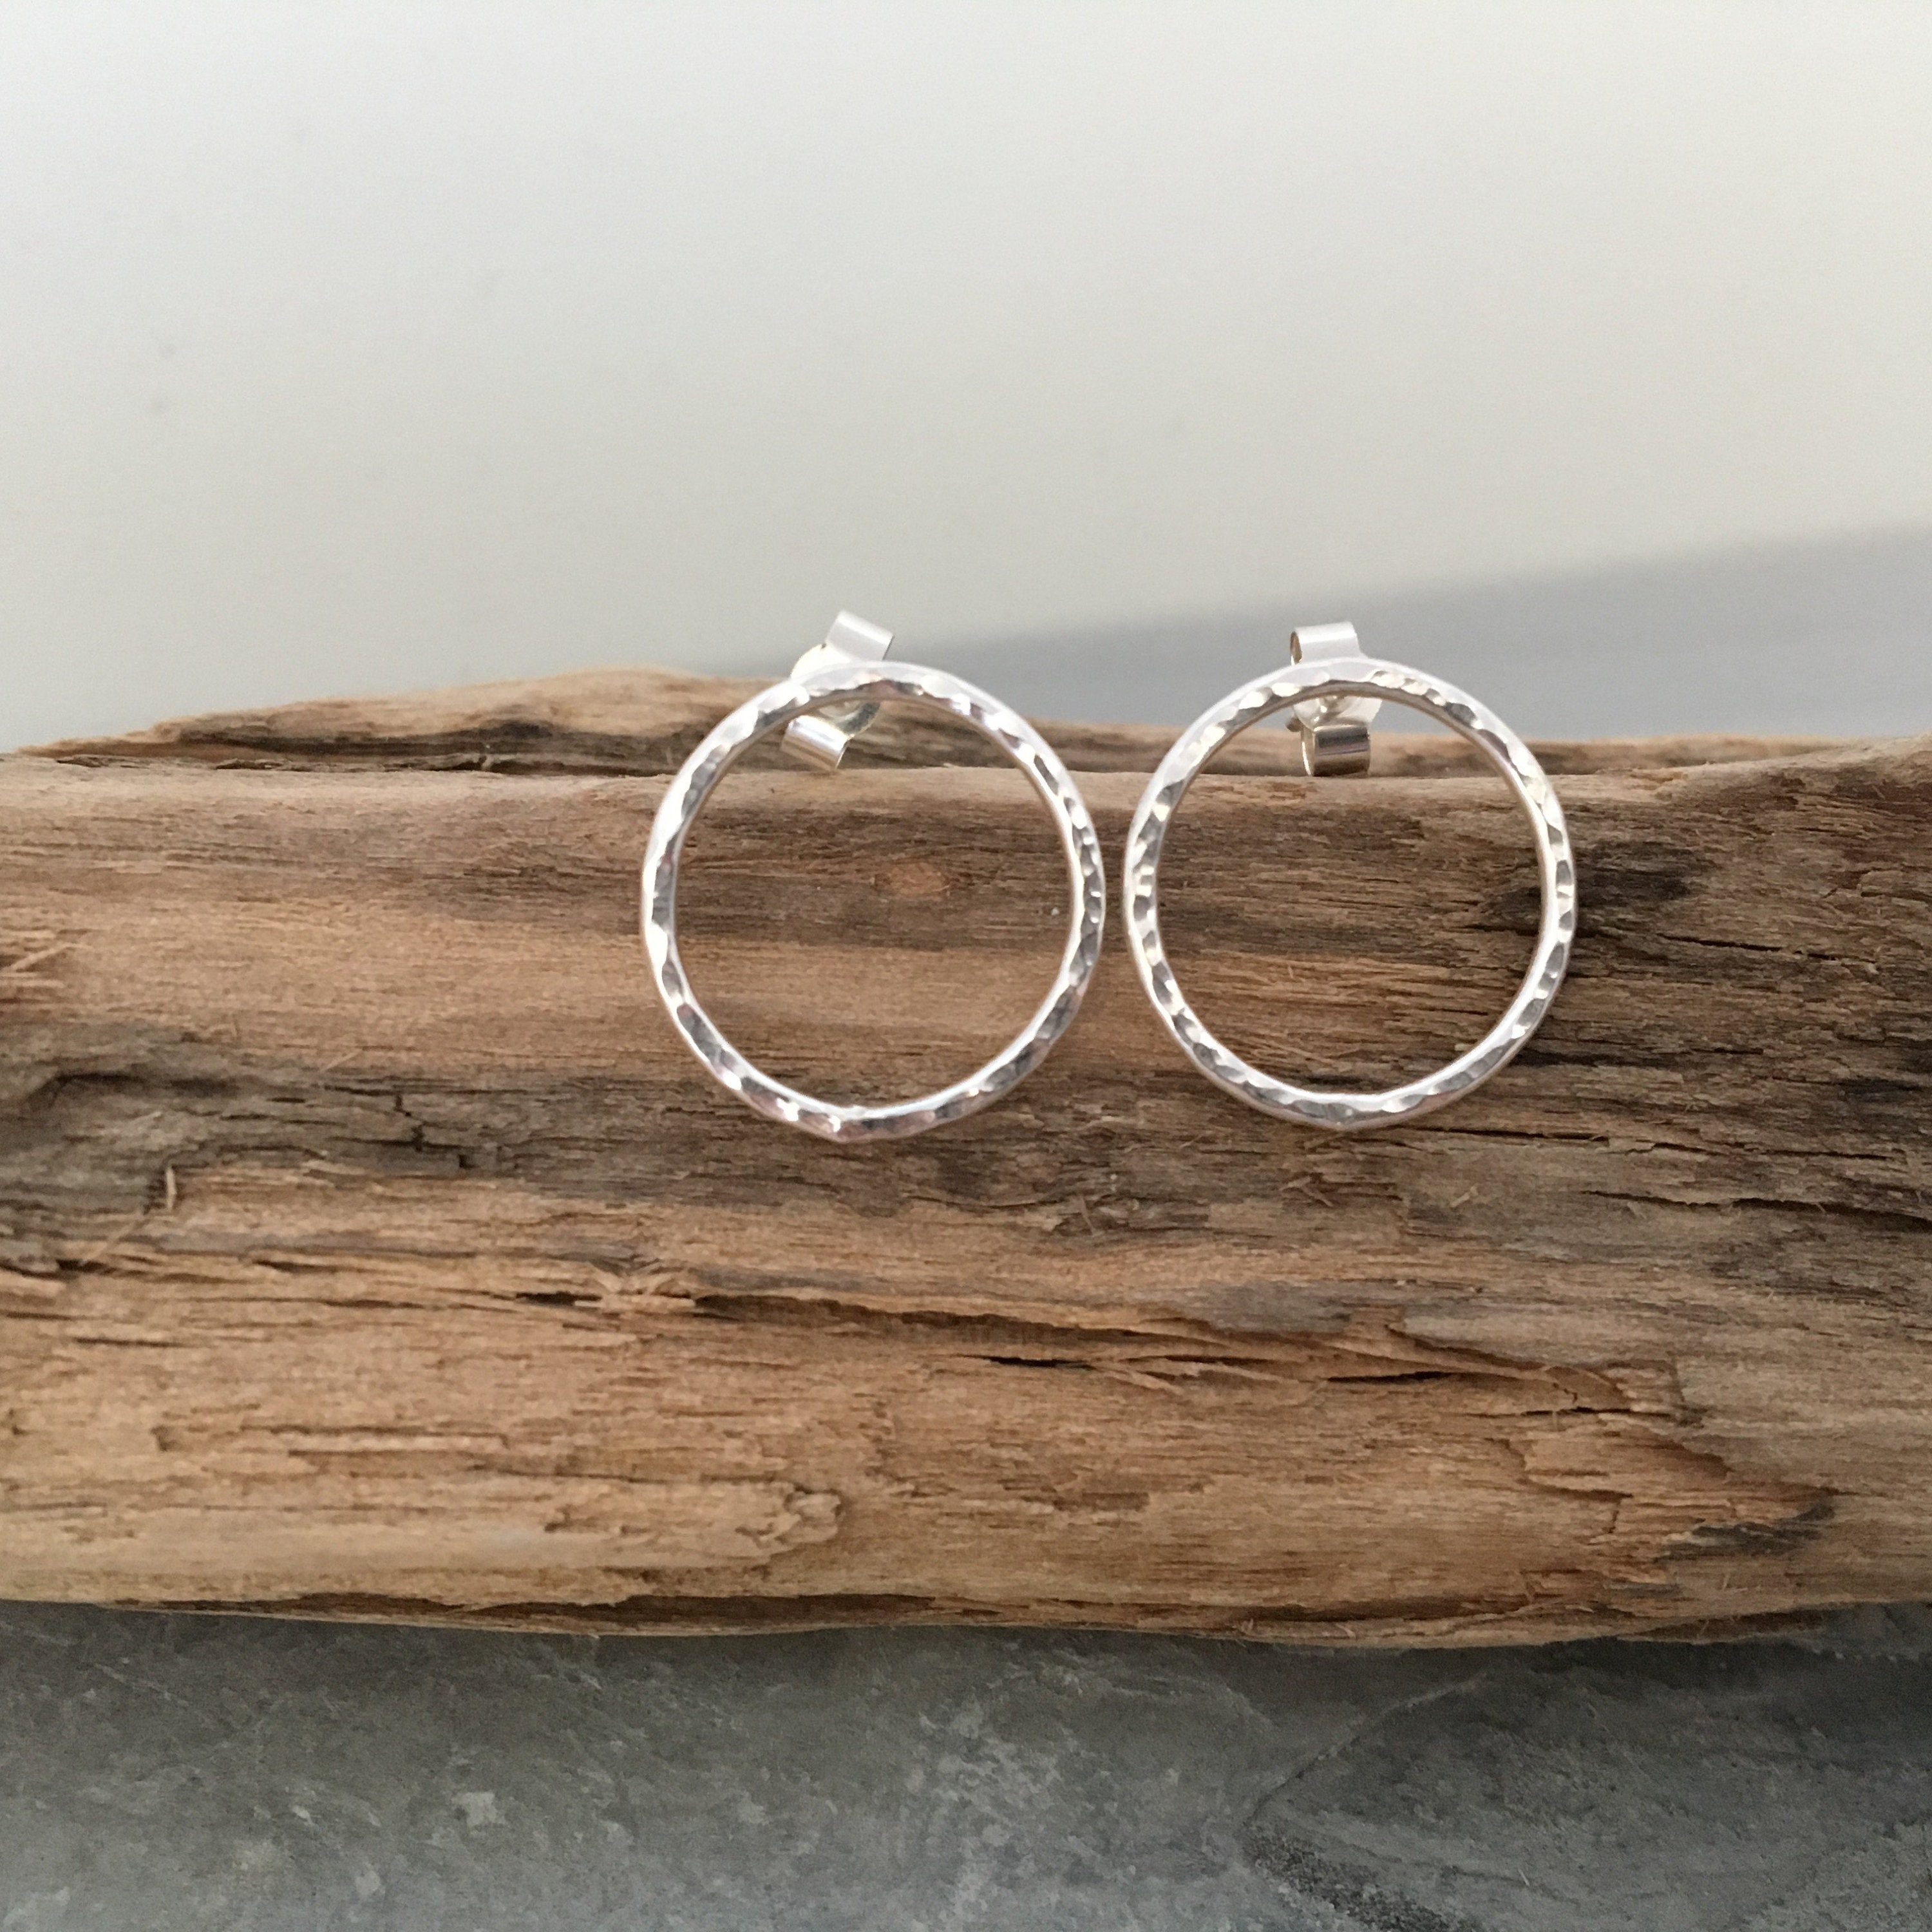 Open Circle Stud Earrings, Hammered Silver Hoop Round Earrings Handmade From Sterling